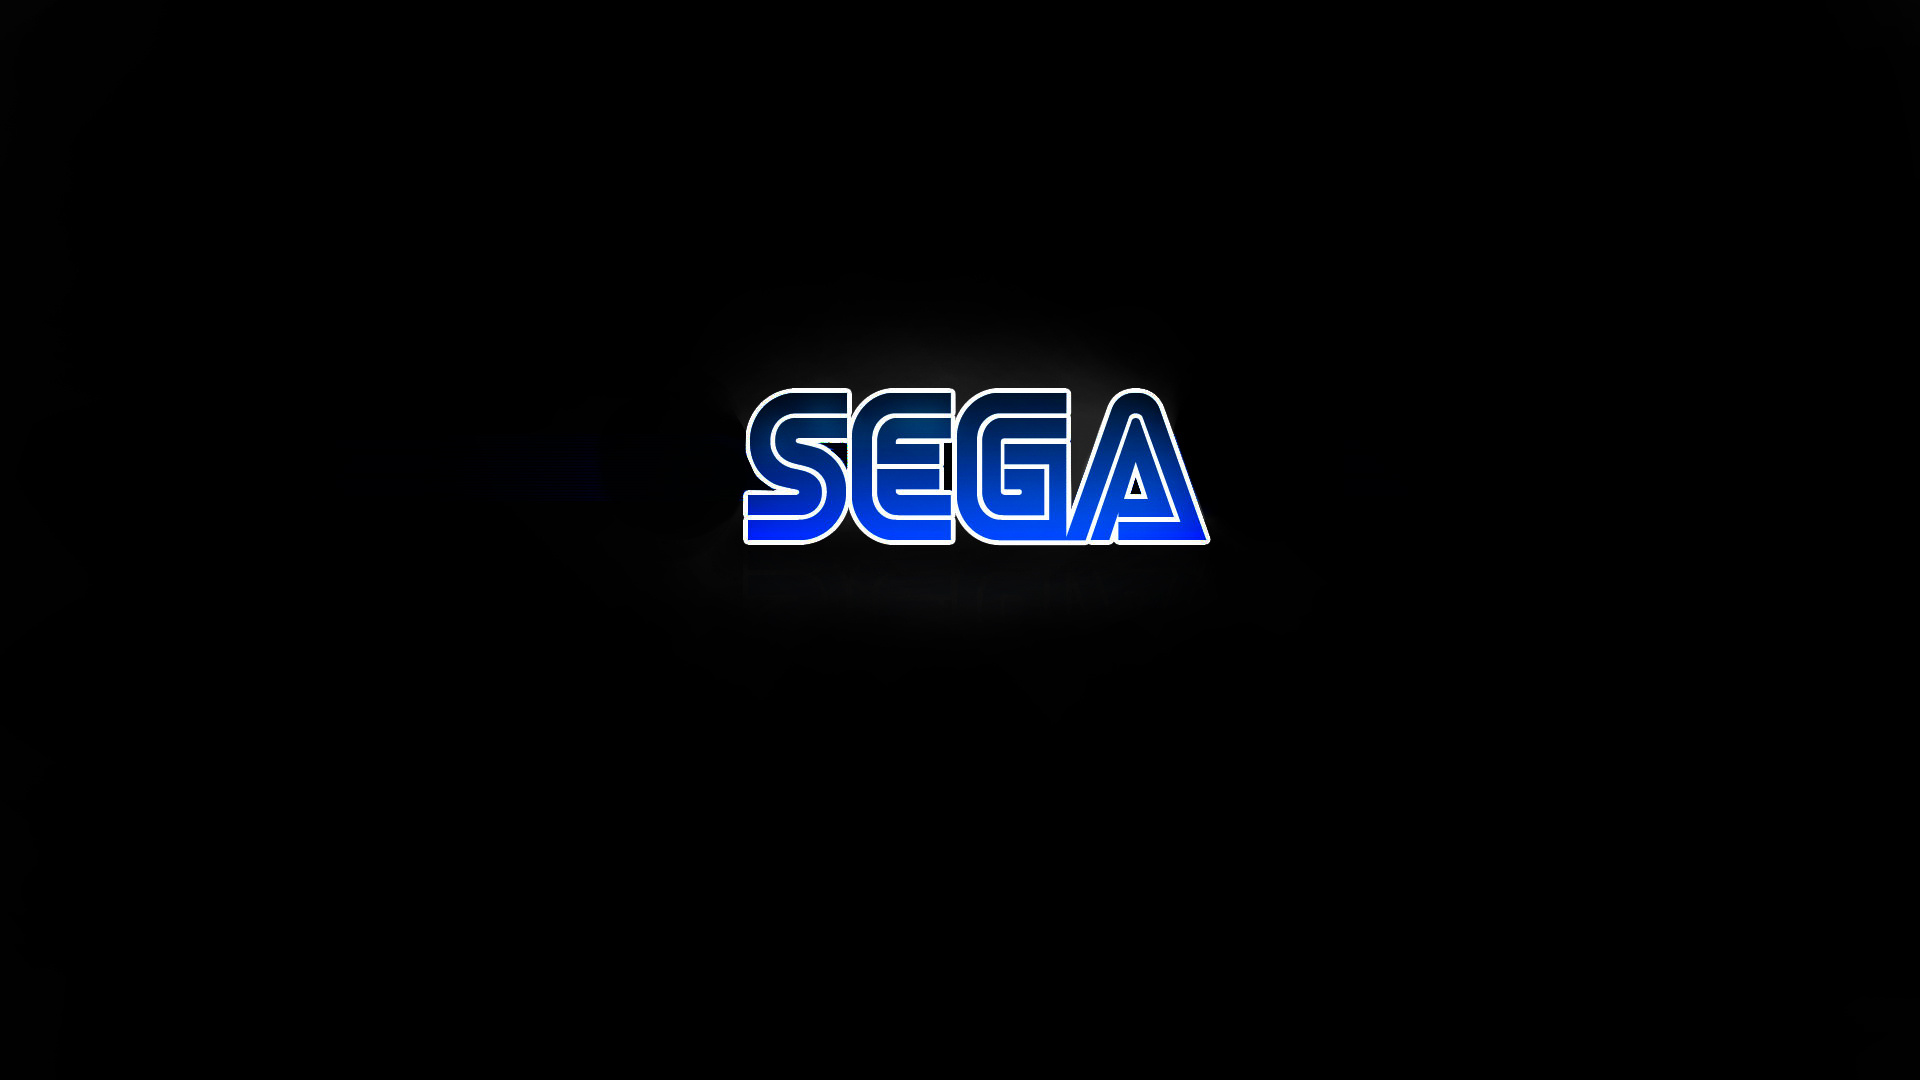 50 Sega Genesis wallpaper, Nostalgic gaming memories, Classic Sega games, Retro wallpapers, 1920x1080 Full HD Desktop